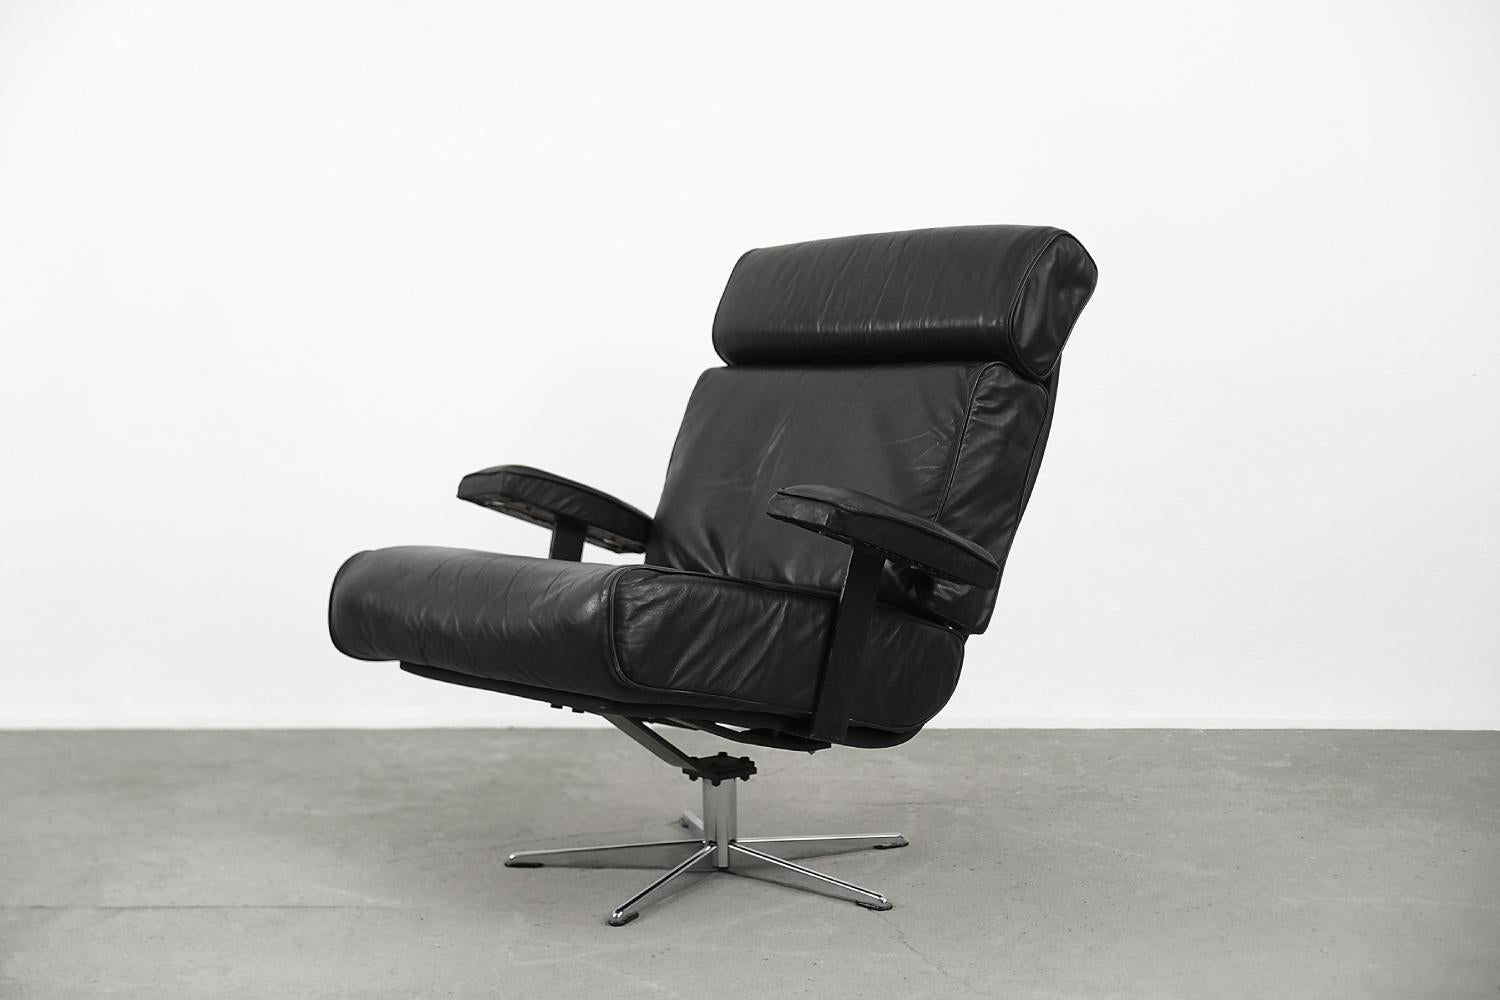 Dieser Bürodrehsessel wurde in den 1960er Jahren in Deutschland hergestellt. Der Rahmen ist aus Metall gefertigt. Der Stuhl ist mit echtem weichem Leder in schwarzer Farbe gepolstert. Die Kopfstütze ist mit einer Lederüberlappung versehen und wird